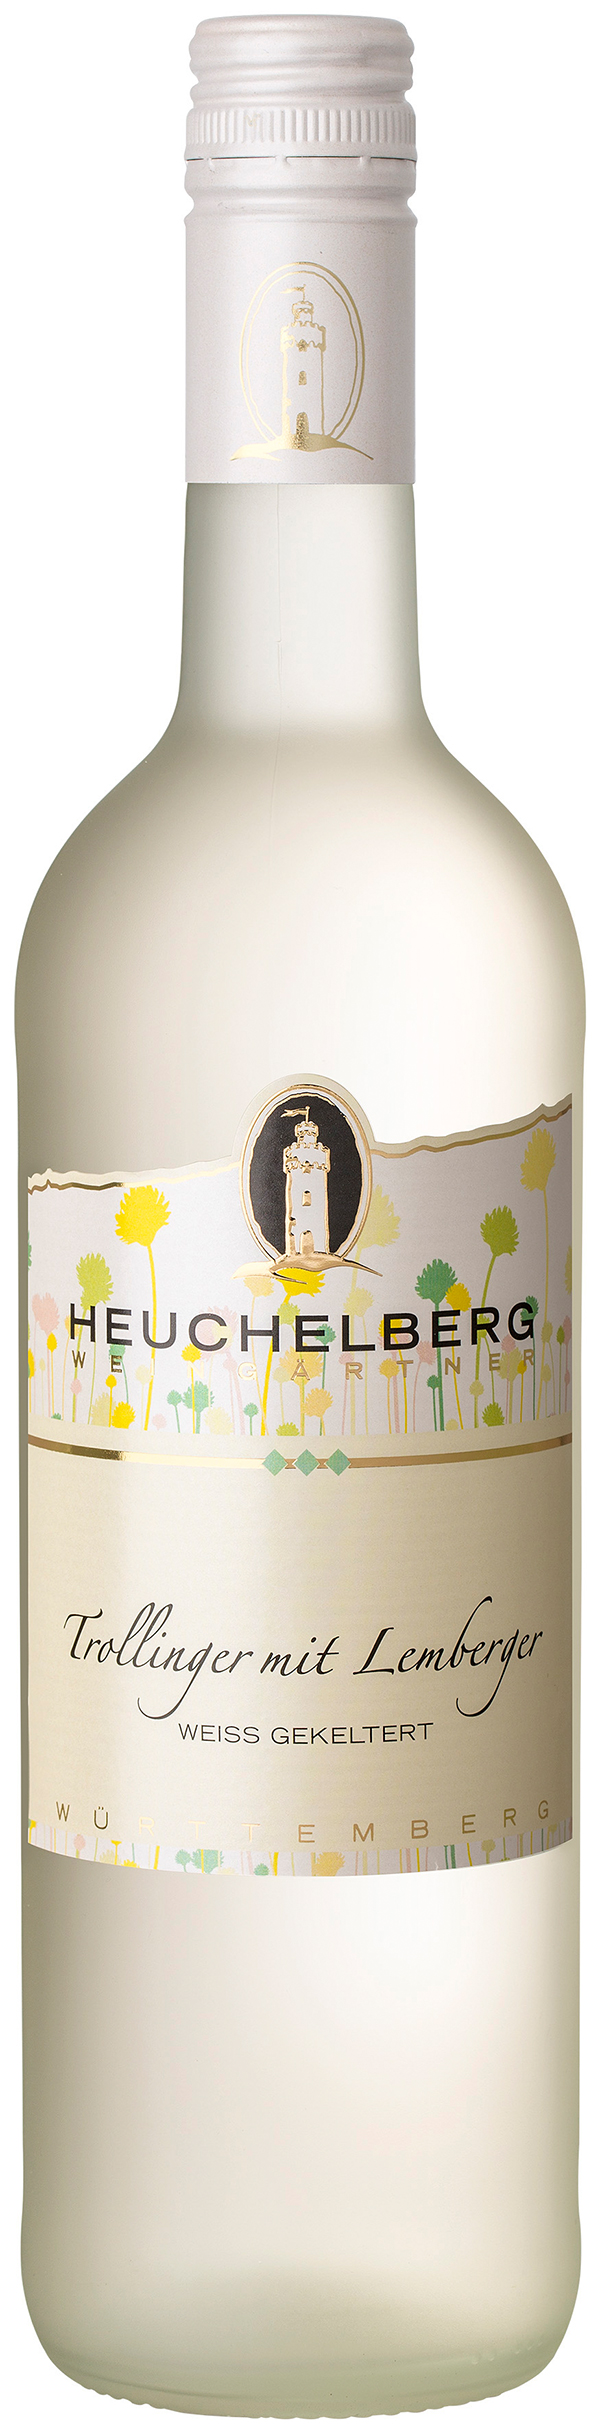 Heuchelberg Trollinger mit Lemberger weiß gekeltert 0.75 l